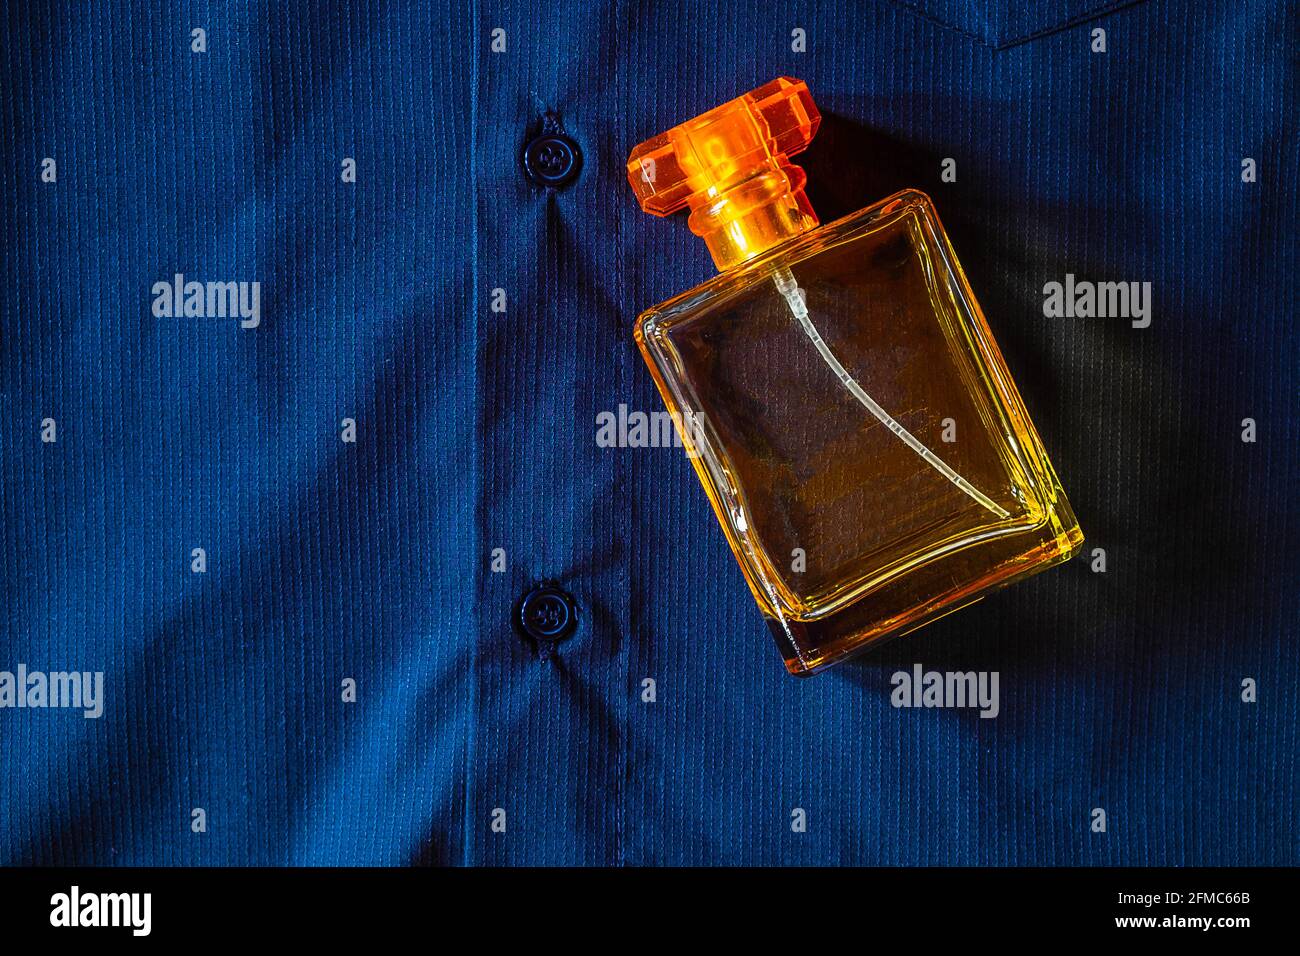 Bottiglia di profumo d'oro immagini e fotografie stock ad alta risoluzione  - Pagina 2 - Alamy